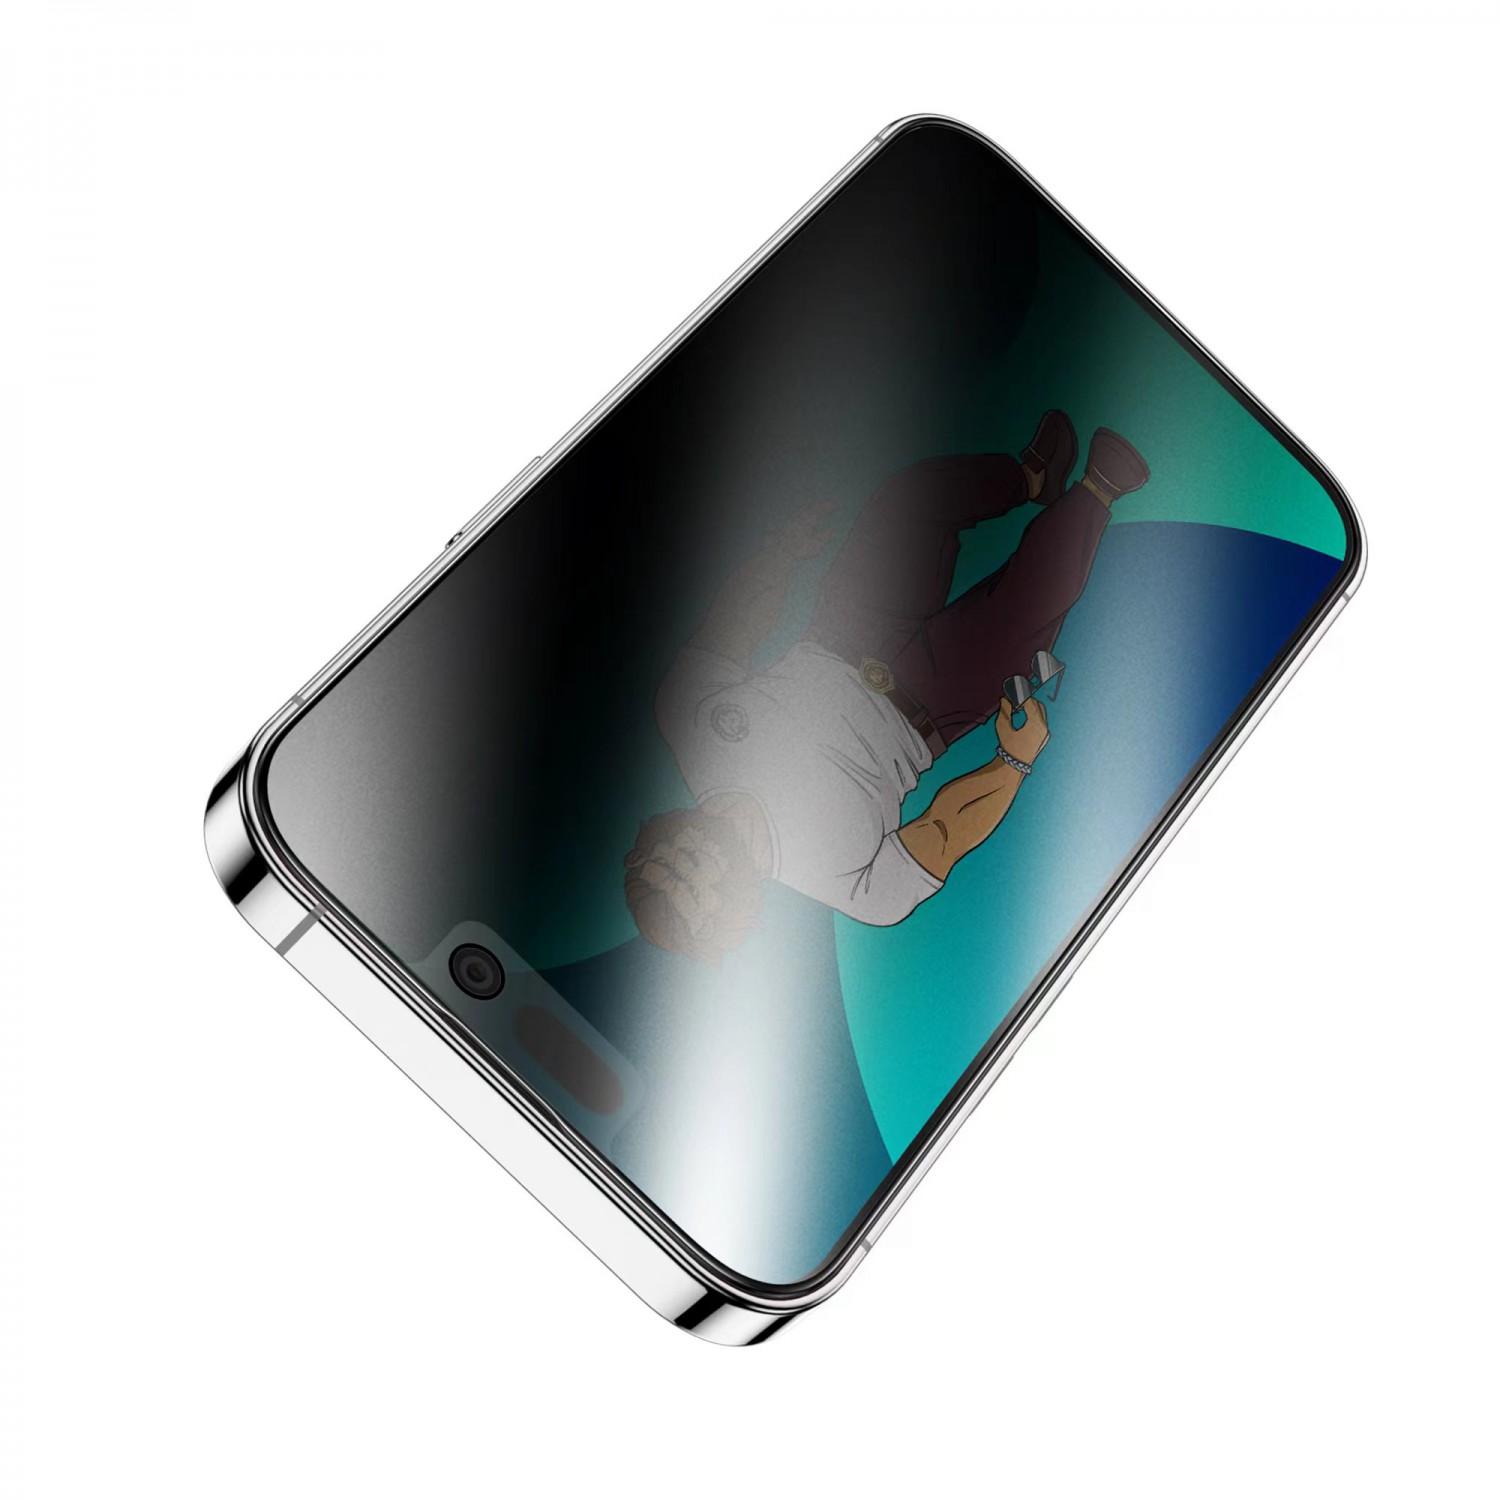 لاصقة حماية الشاشة لموبايل ايفون 14 برو ماكس زجاجية جرين Green 3D AG/Matte Privacy Glass Screen Protector for iPhone 14 Pro Max - cG9zdDoxMzc4NzM5